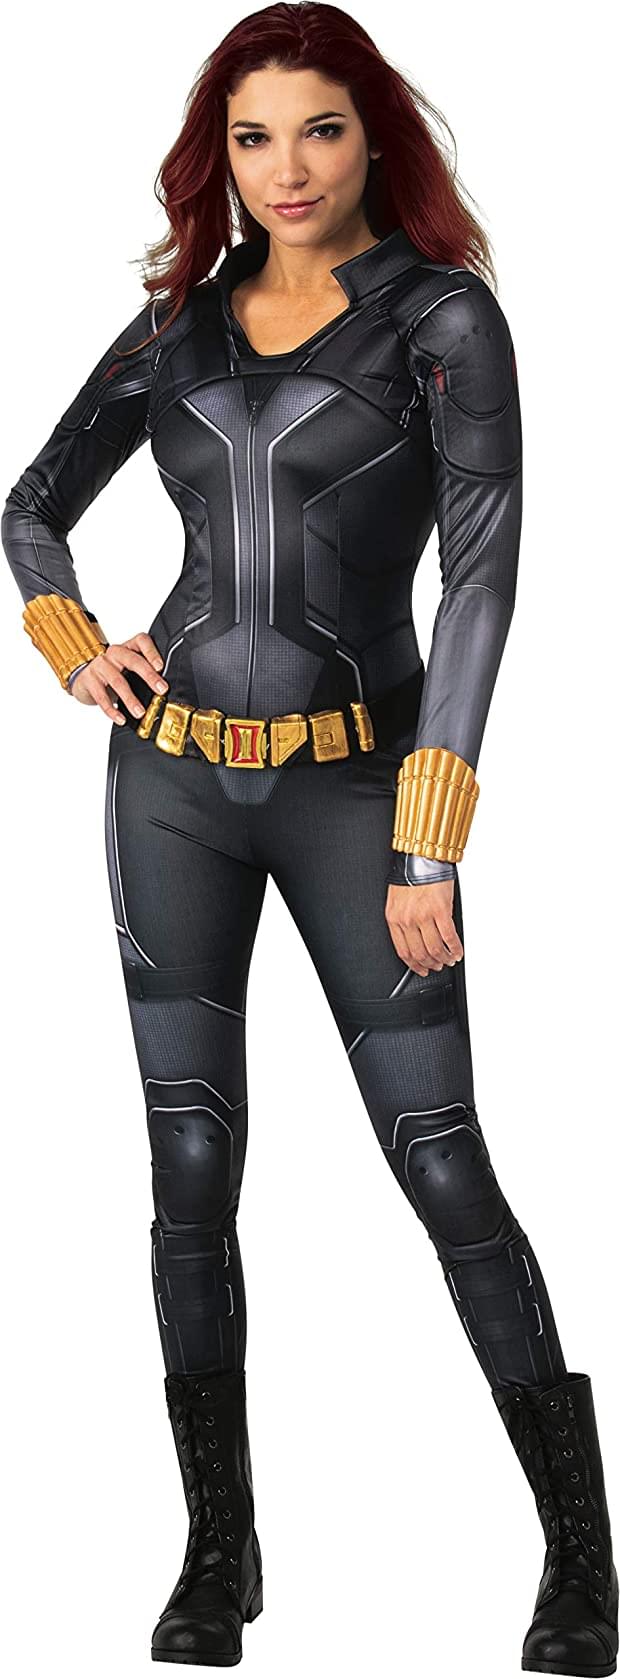 Marvel Black Widow Deluxe Adult Costume